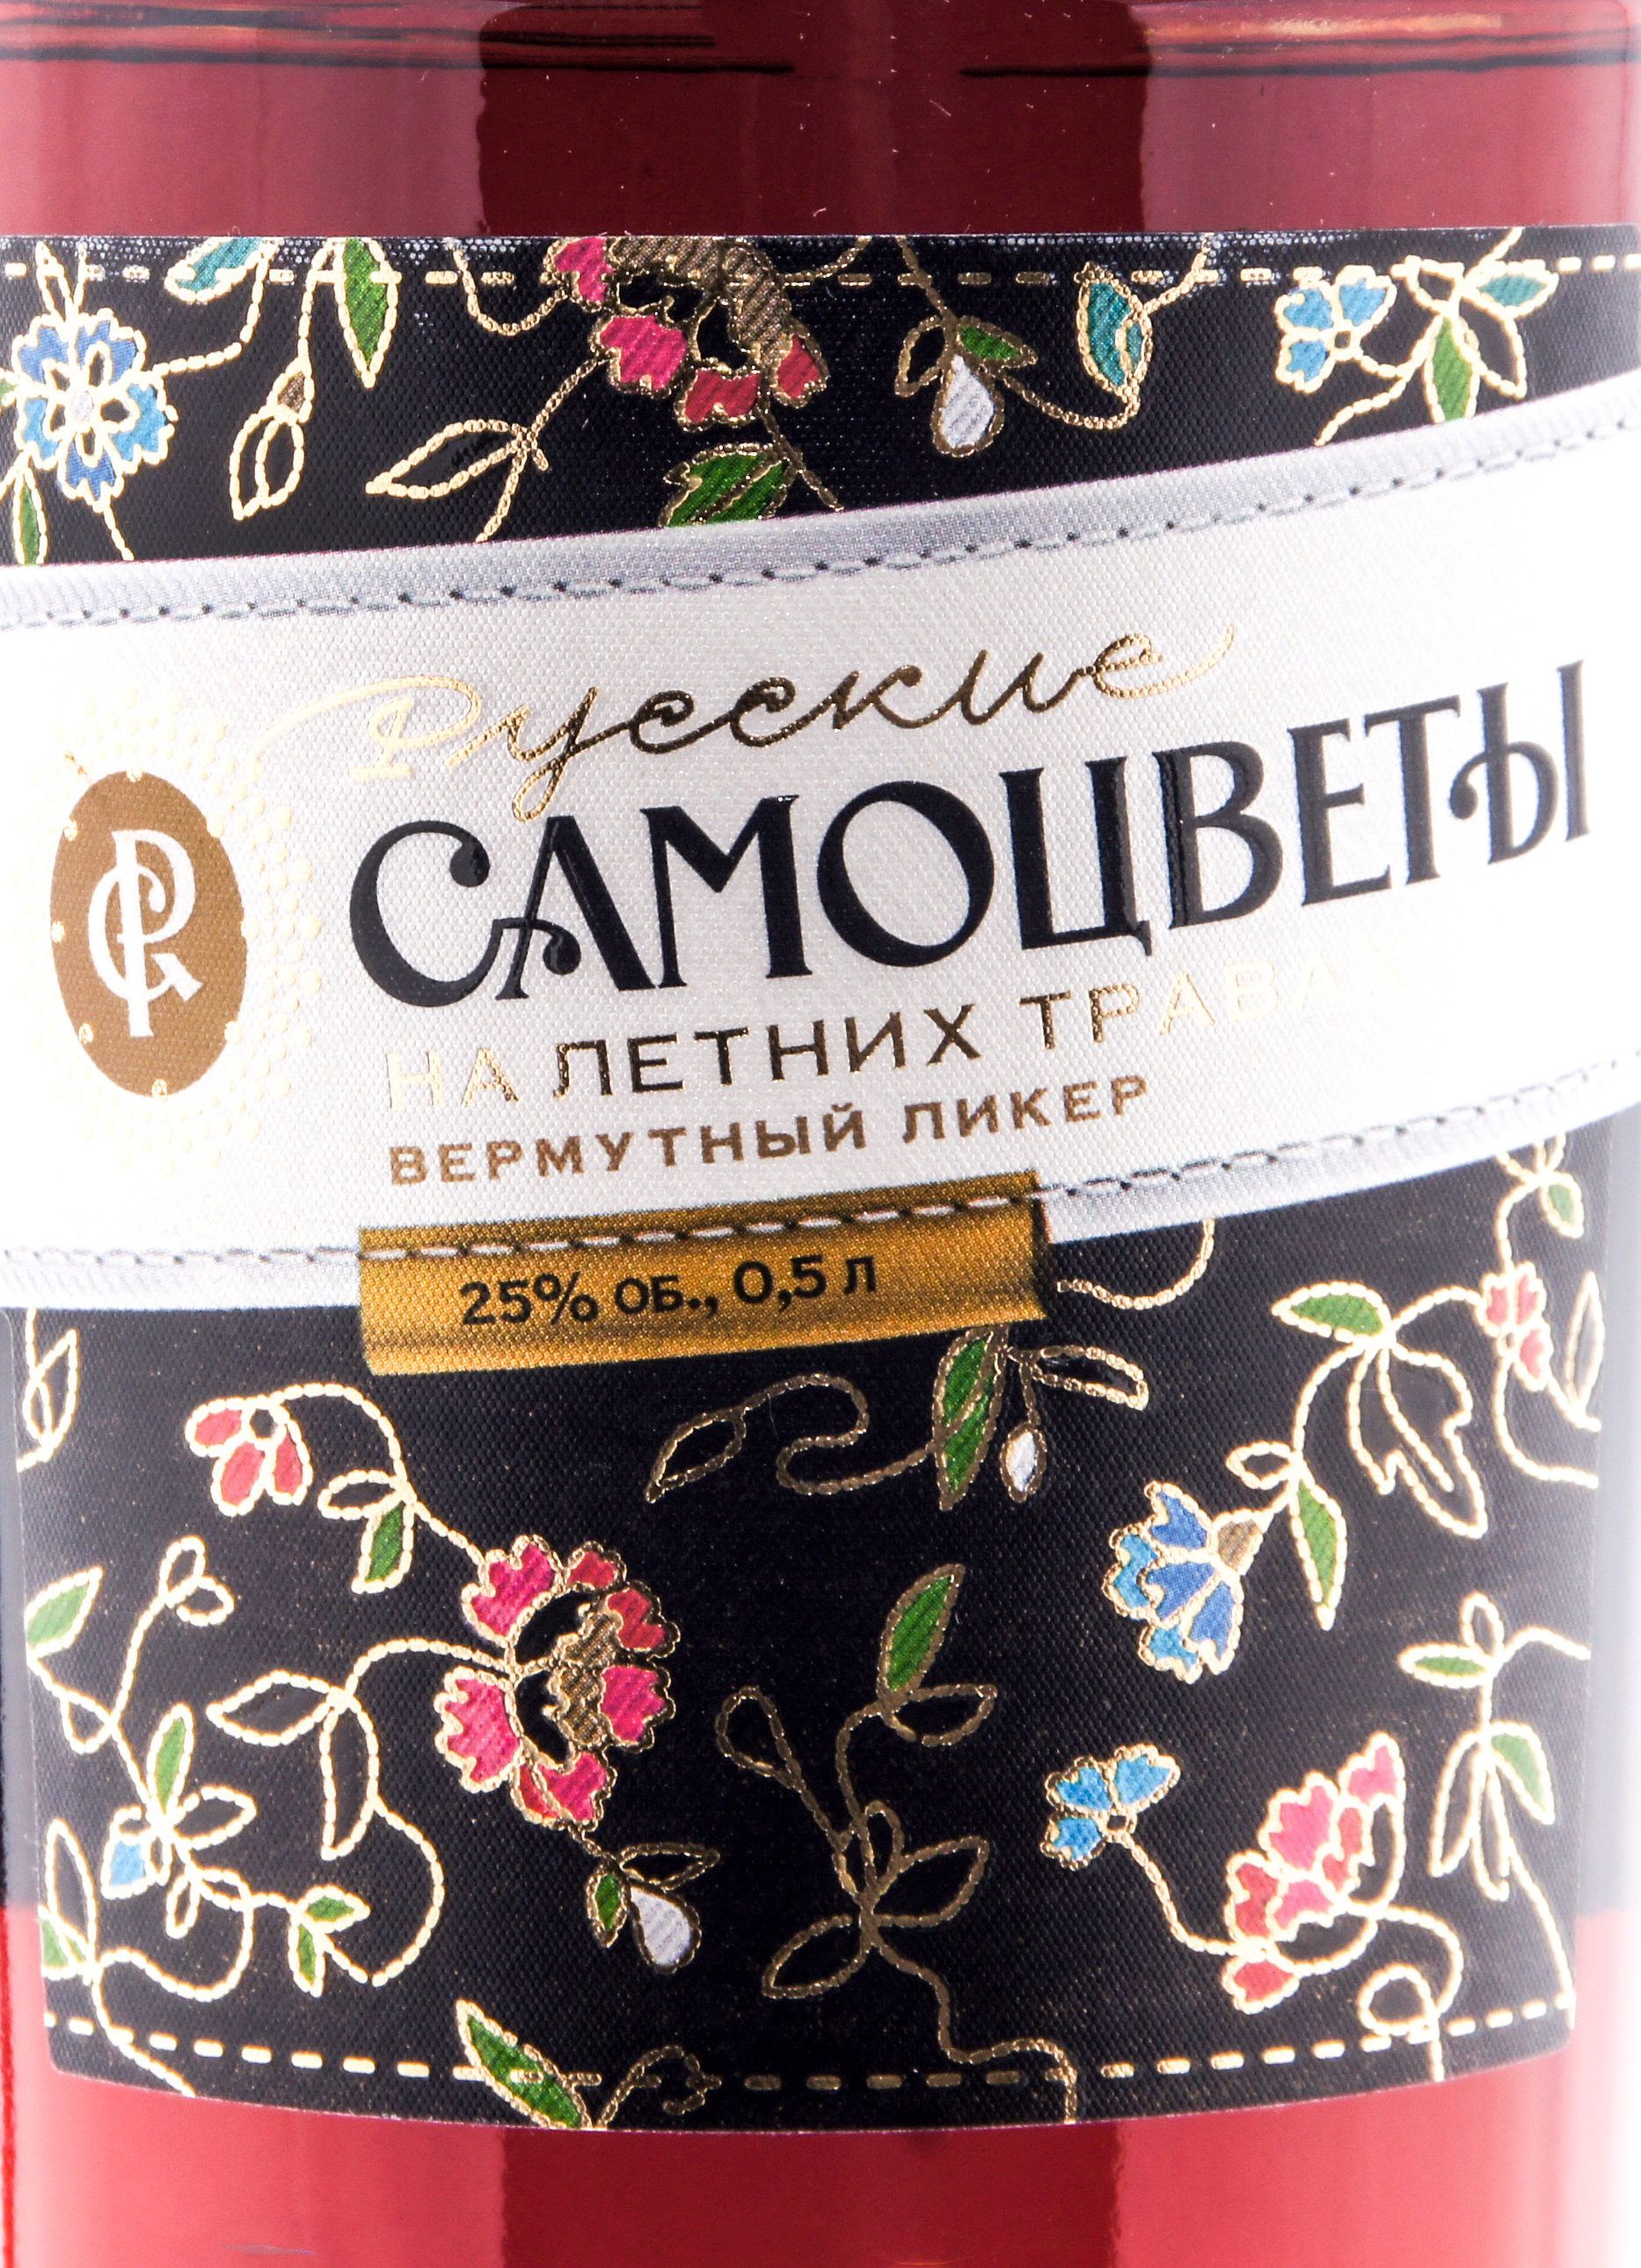 Этикетка Русские Самоцветы на летних травах ликер десертный 0.5л 25%